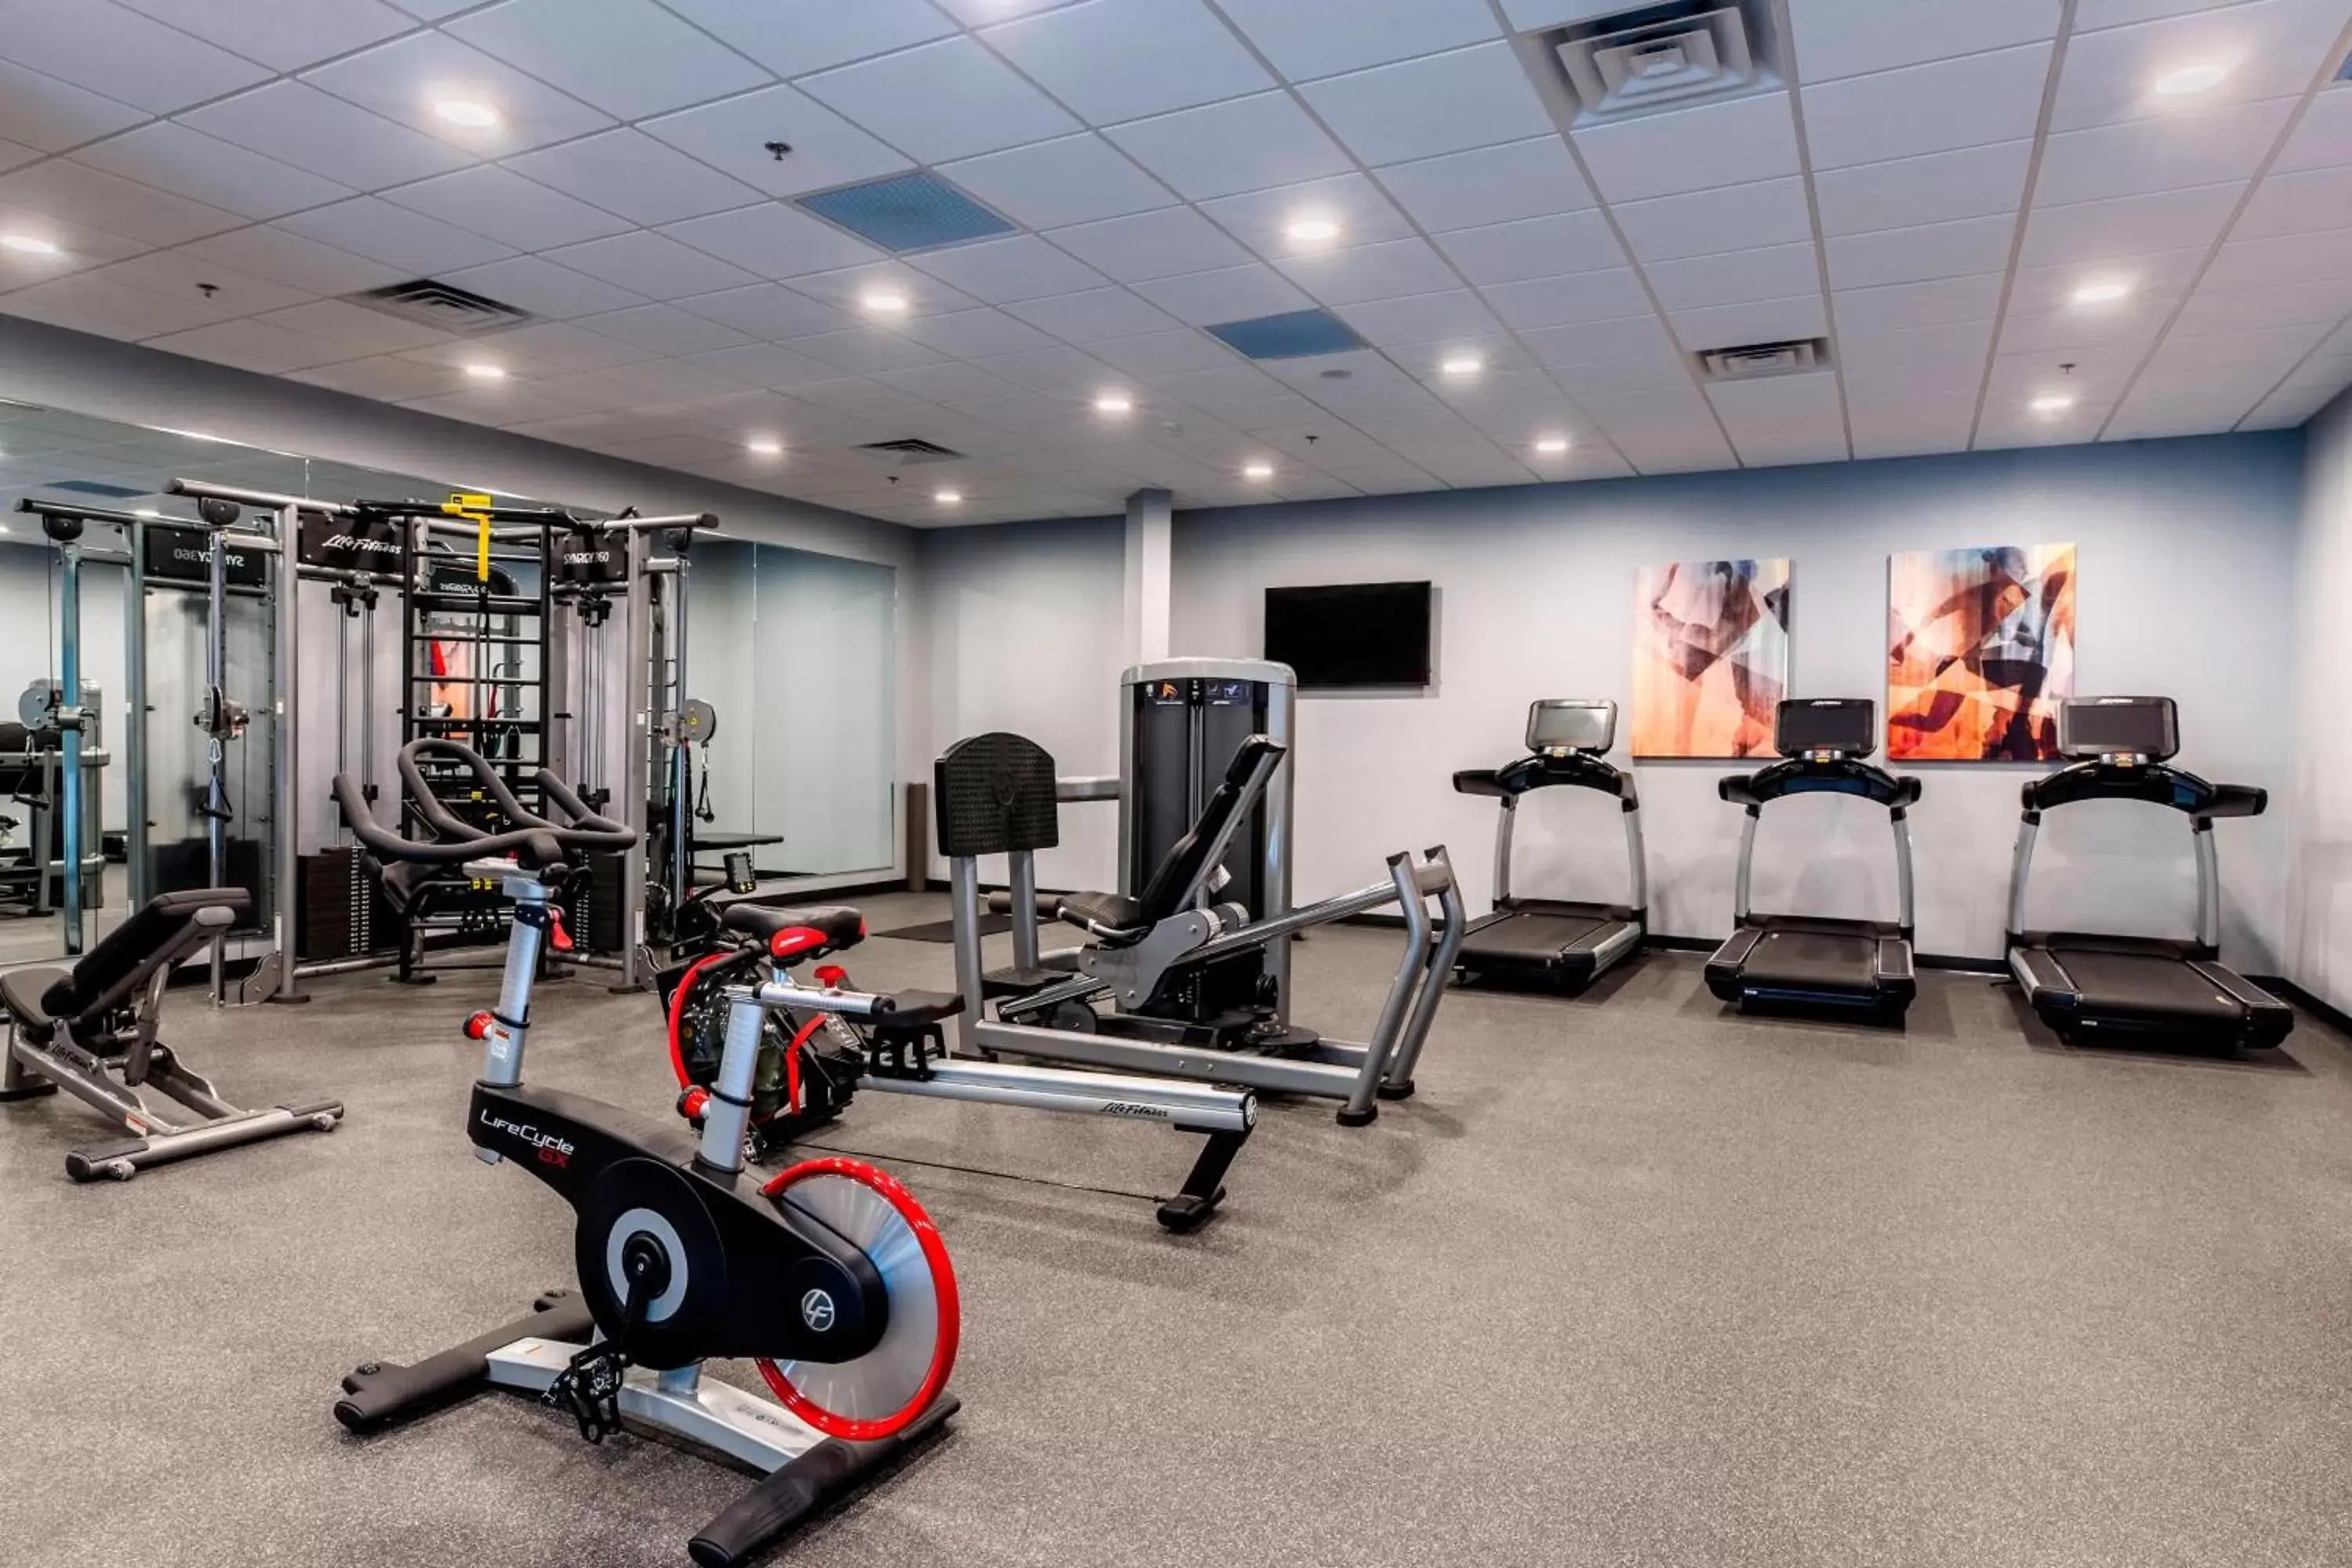 Fitness centre/facilities, Fitness Center/Facilities in Delta Hotels by Marriott Fargo